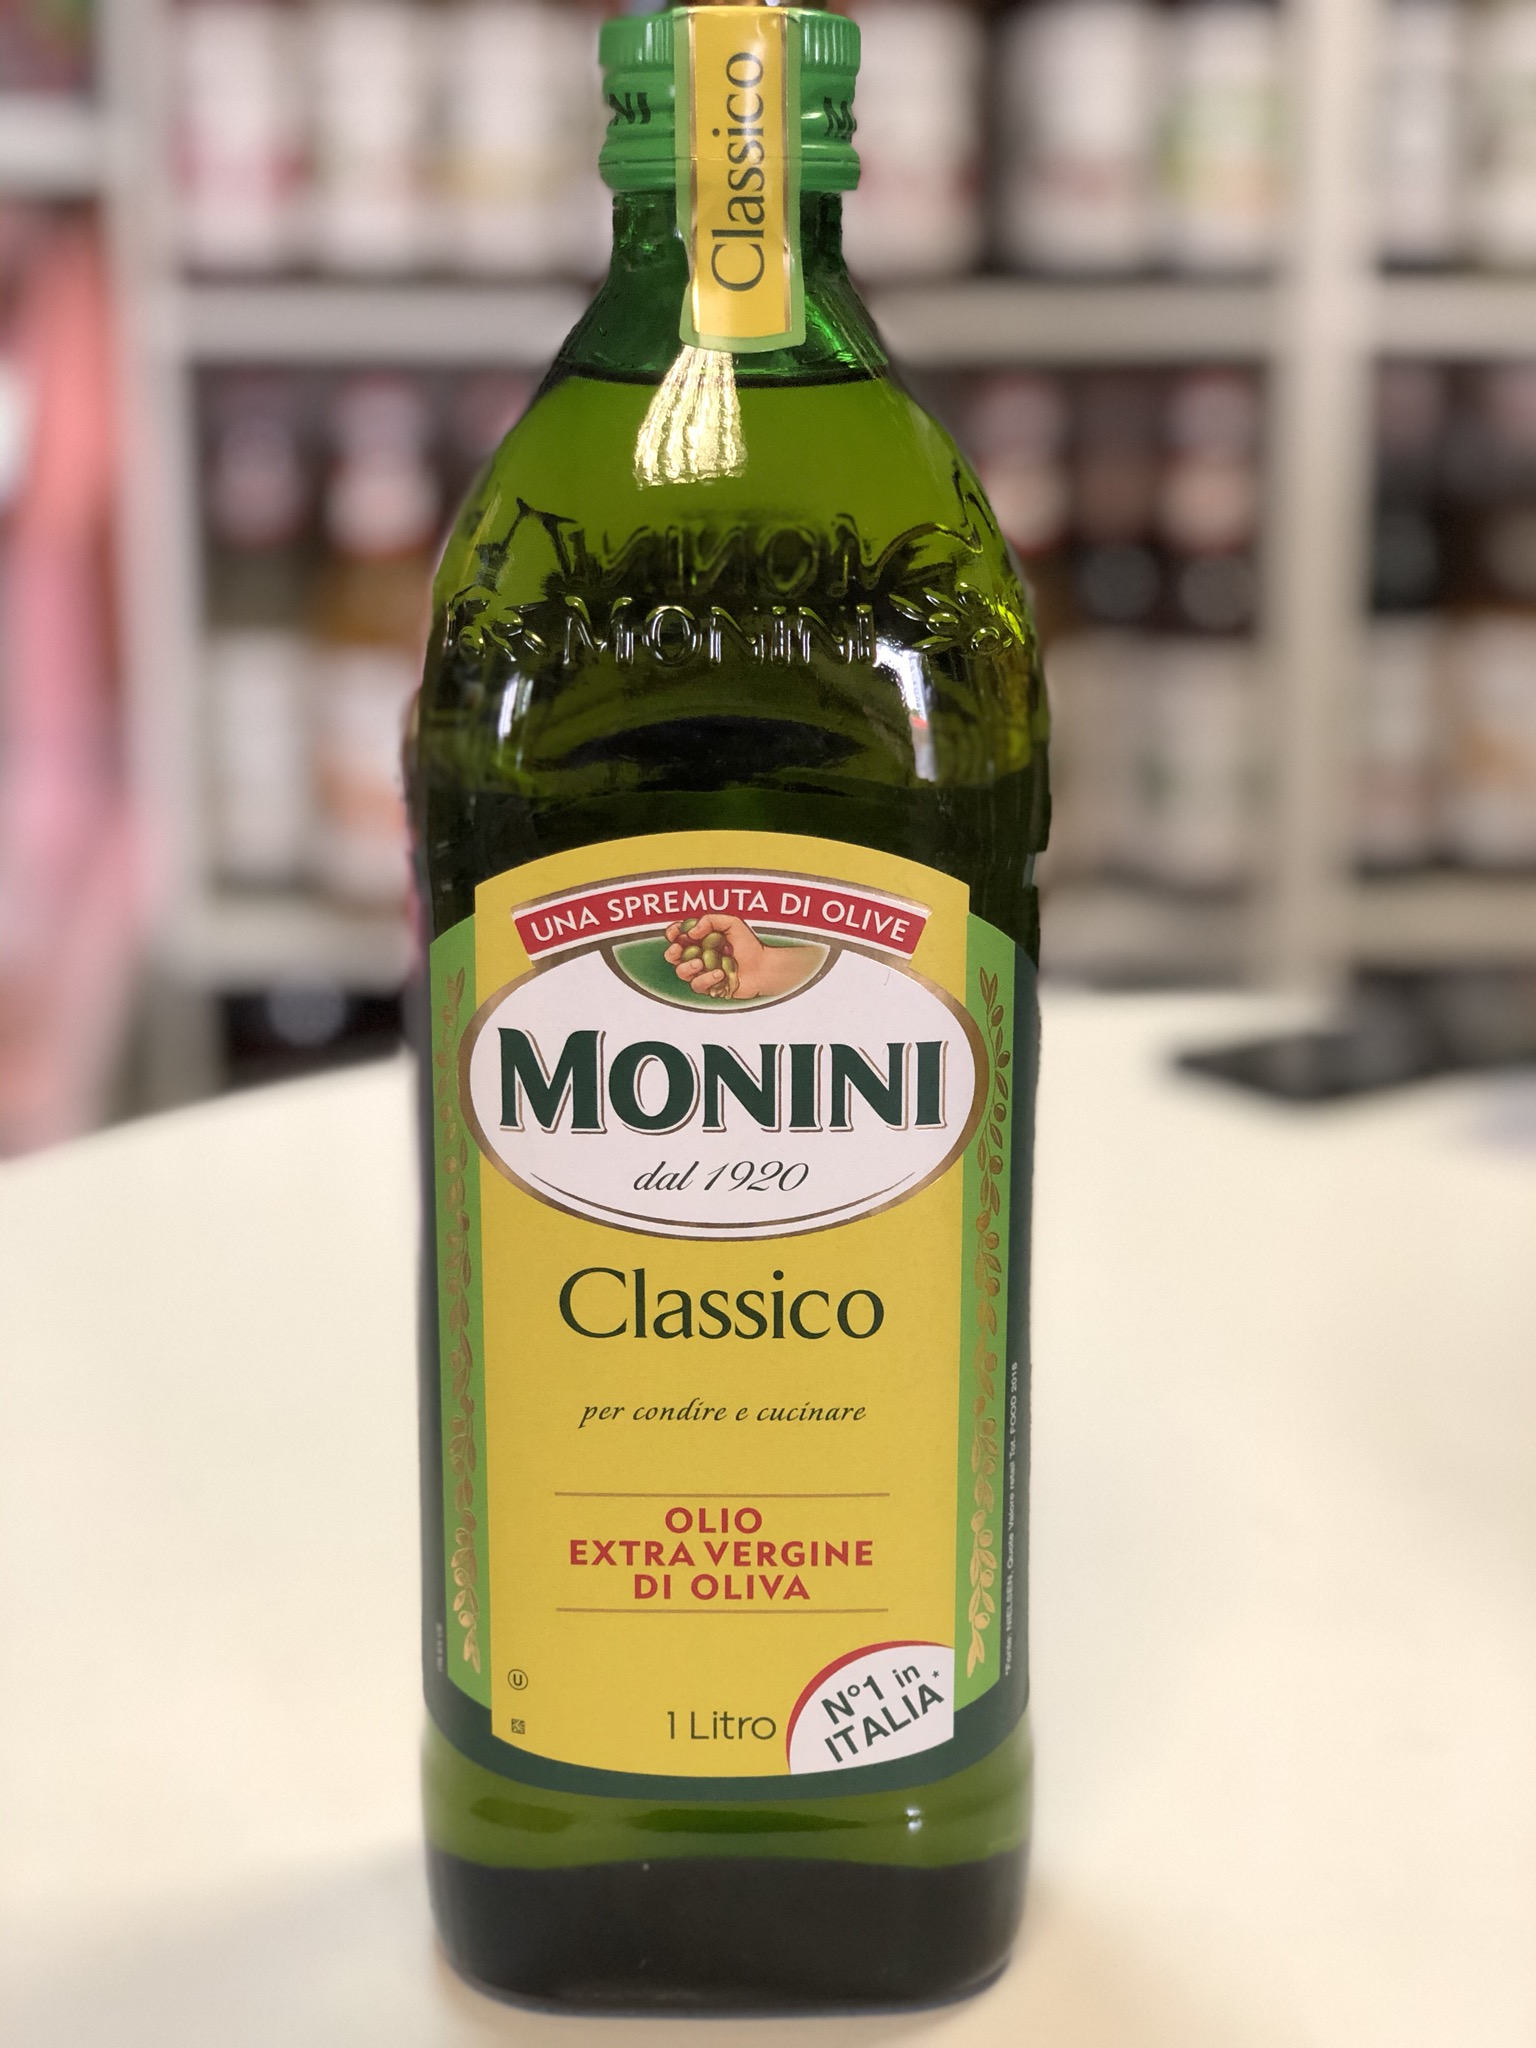 Оливковое масло монини купить. Масло оливковое Monini Extra vergine Classico, 1л. Monini Classico оливковое масло 1 литр. Масло оливковое Монини 1 литр. Monini масло оливковое нерафинированное.